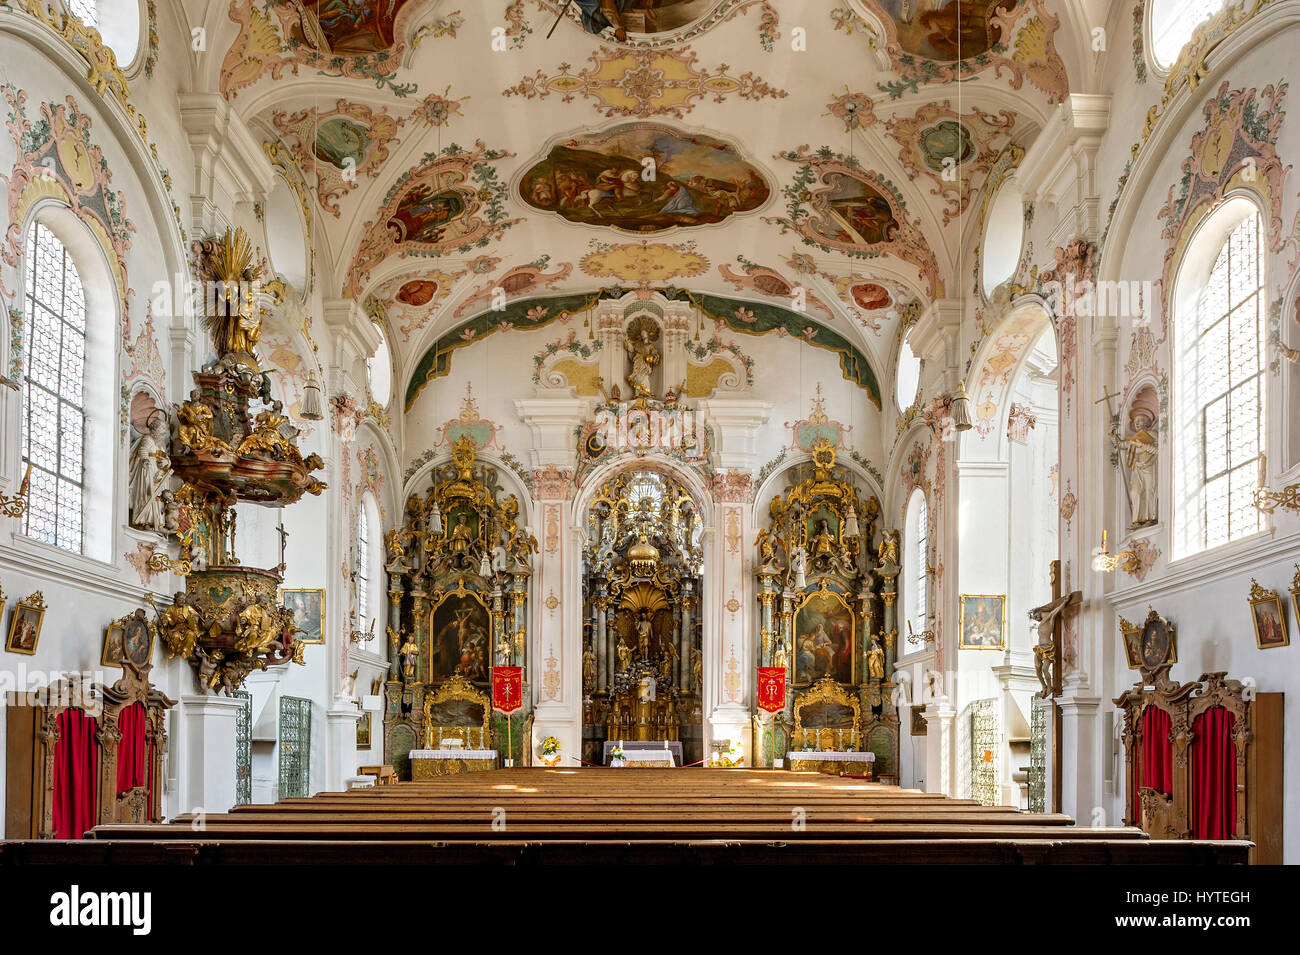 Église de pèlerinage de Maria Hilf, nef, de l'intérieur rococo, Klosterlechfeld, souabe, Bavière, Allemagne Banque D'Images